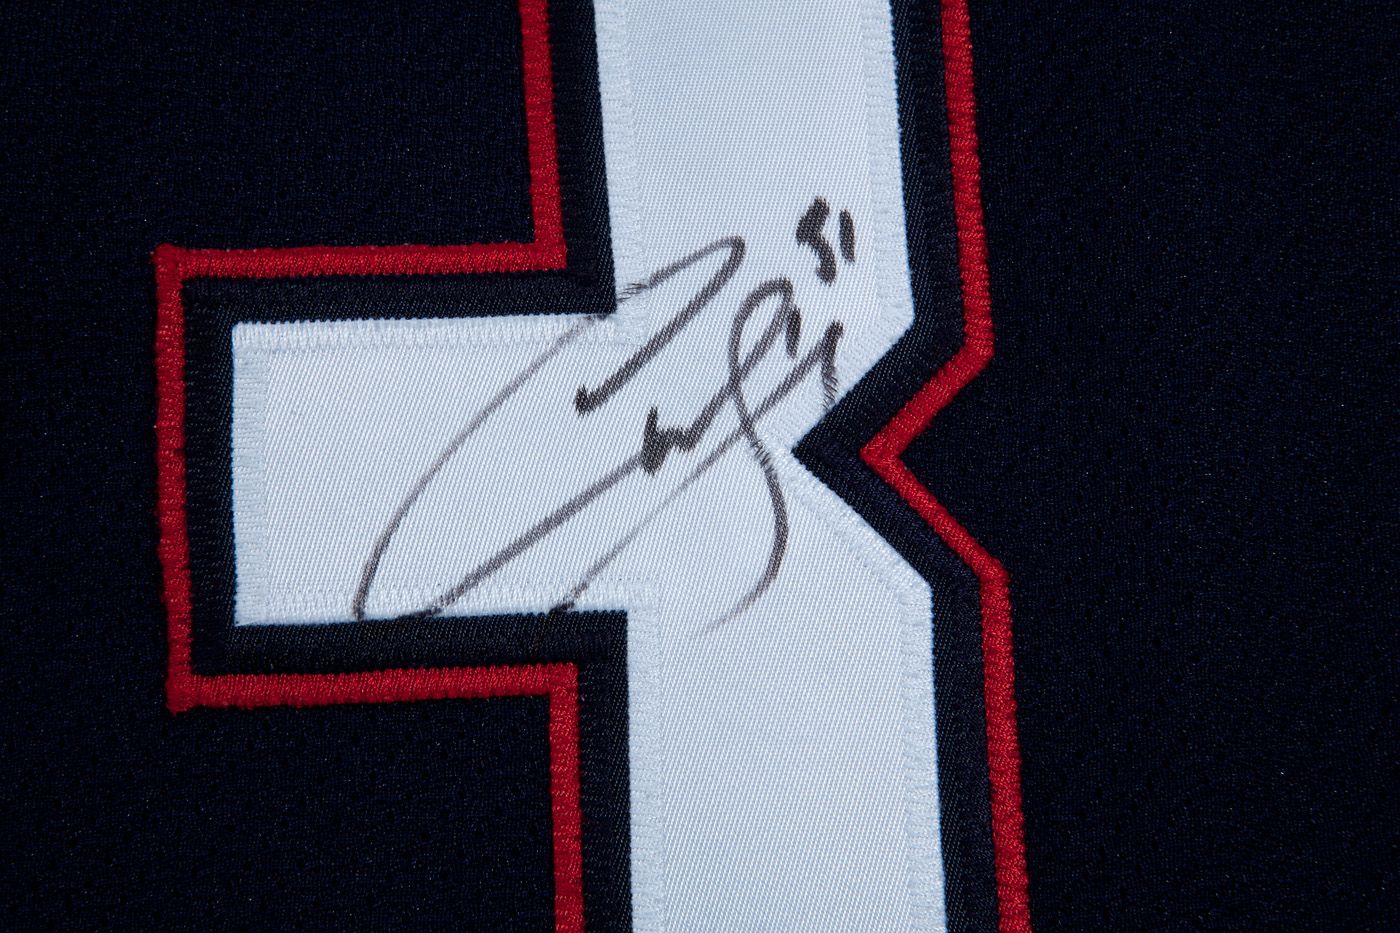 Edmonton Oilers Curtis Joseph autographed jersey. - Imgur